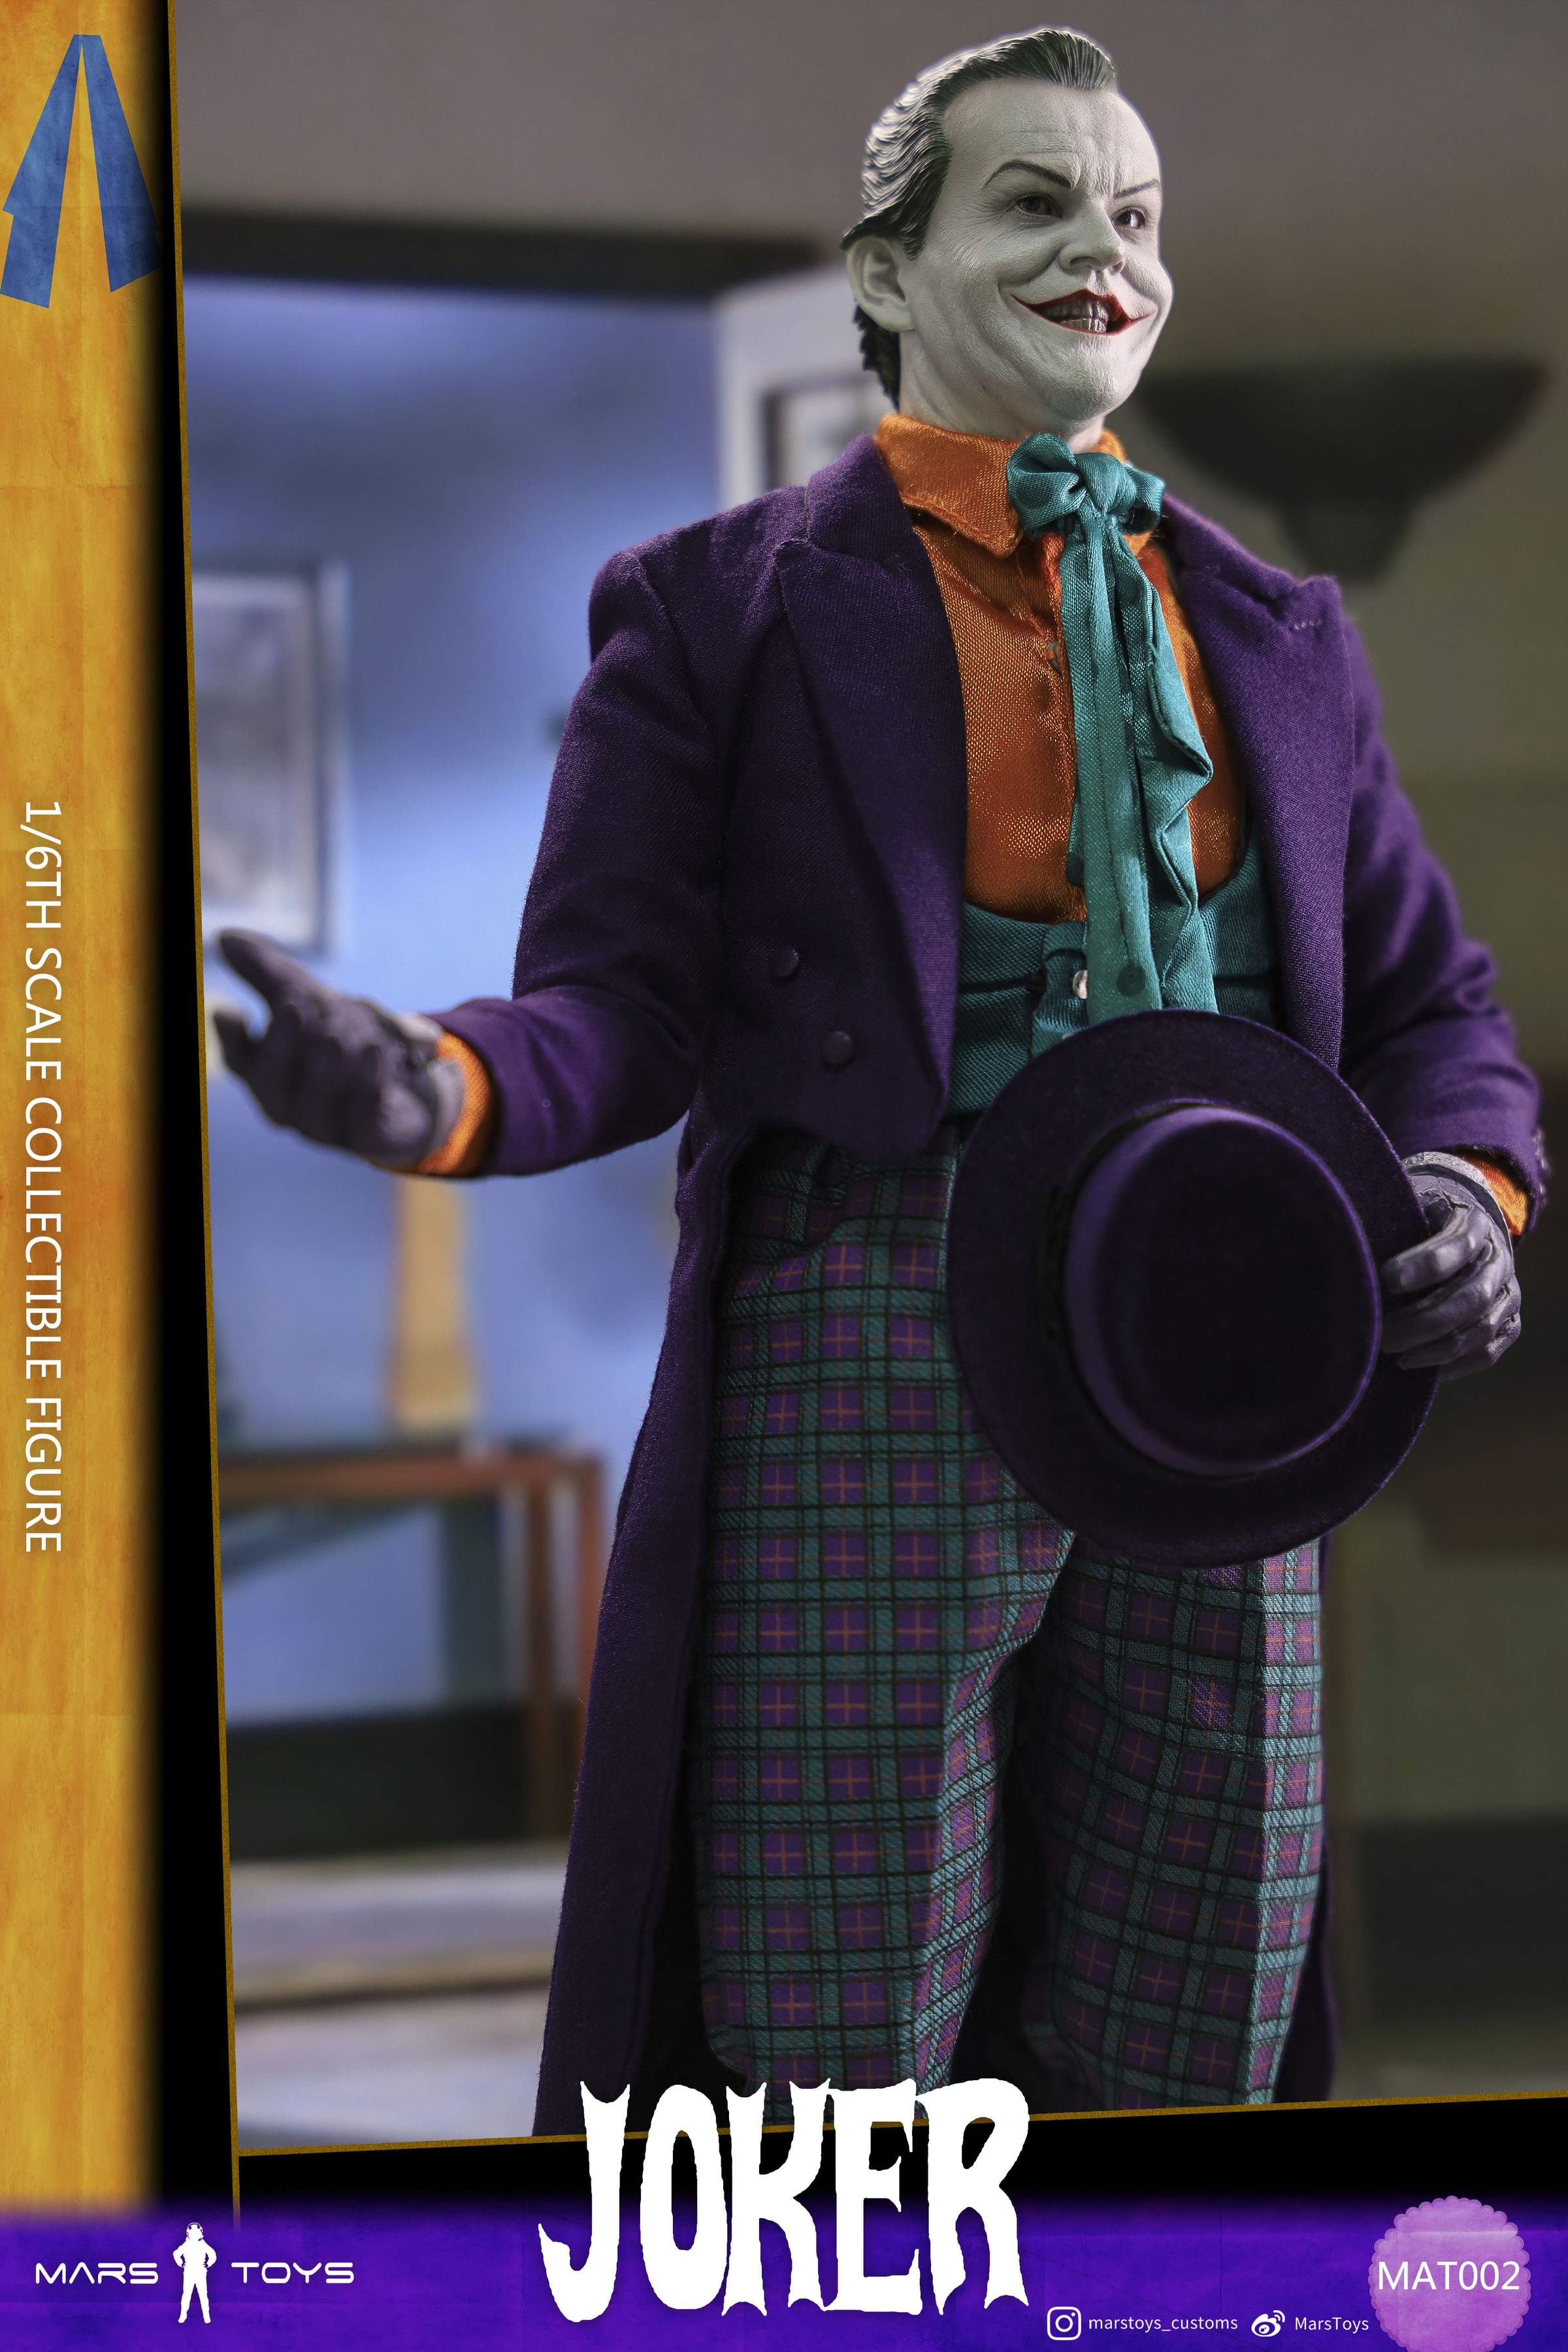 Dress Up Like The Joker 1989 from Batman - Elemental Spot